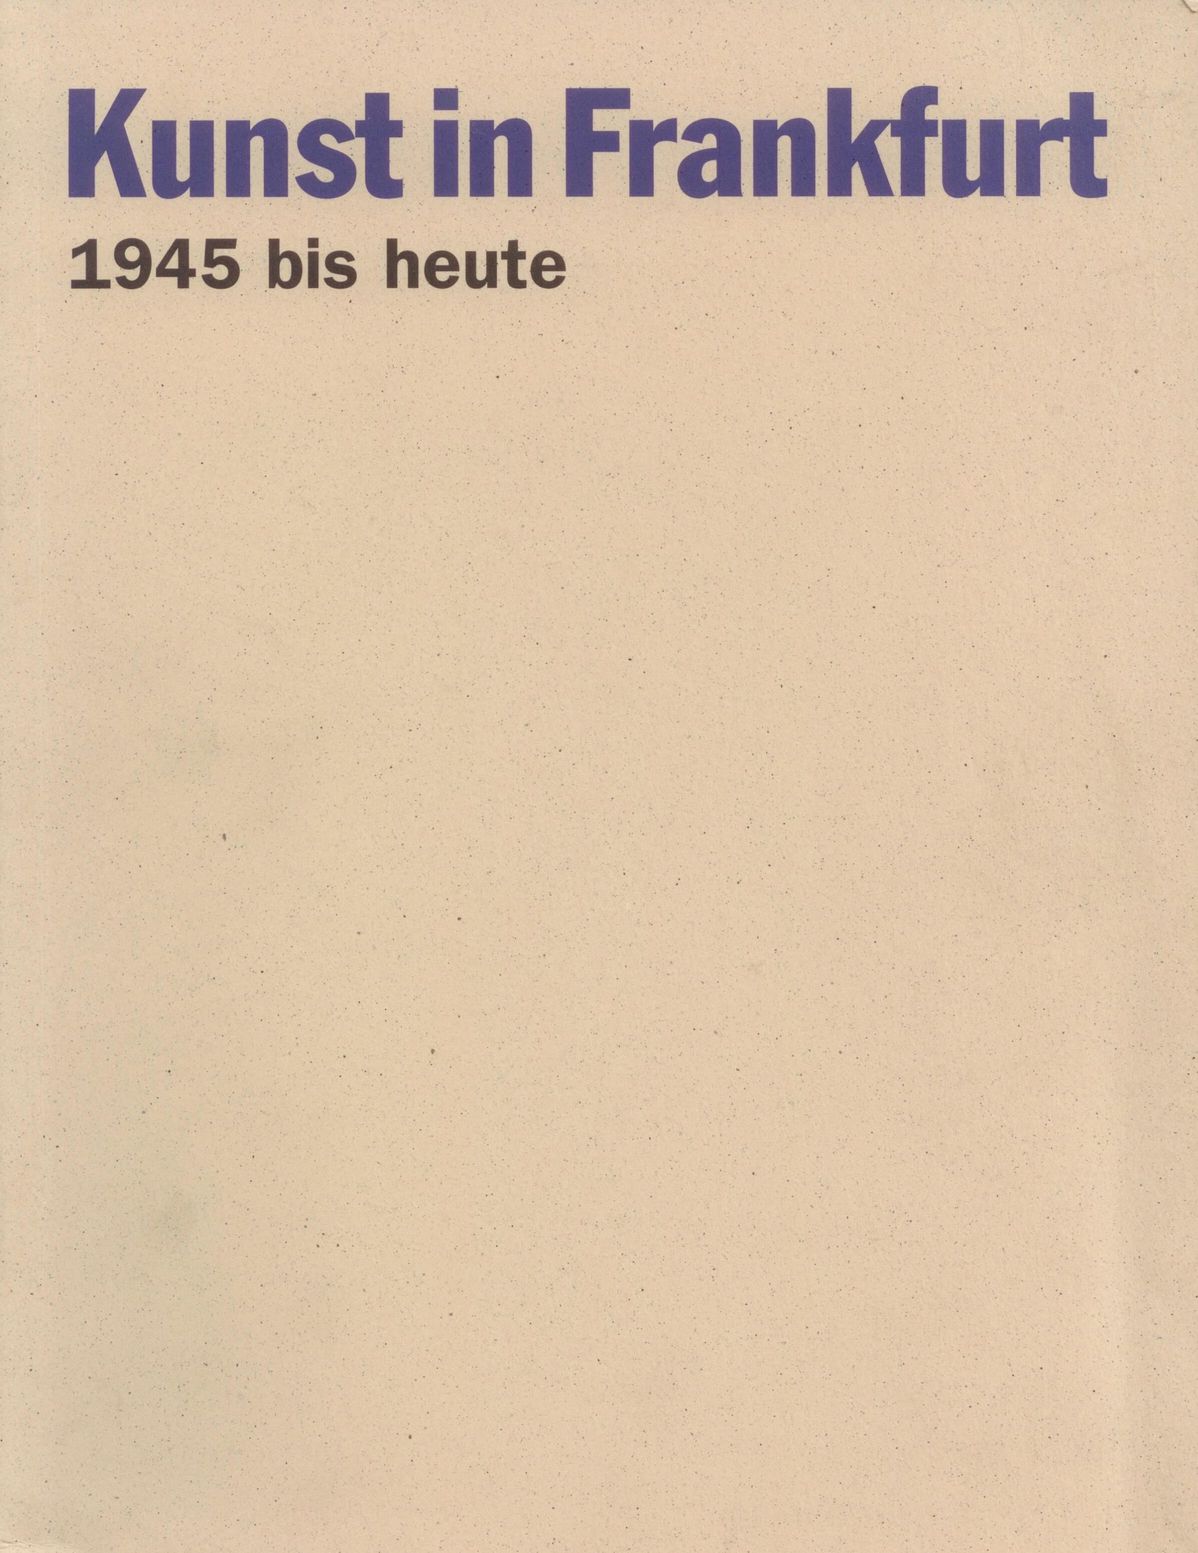 Kunst in Frankfurt 1945 bis heute, Bild: Hrsg. von Rolf Lauter. Frankfurt/M.: Societäts-Verl., 1995..